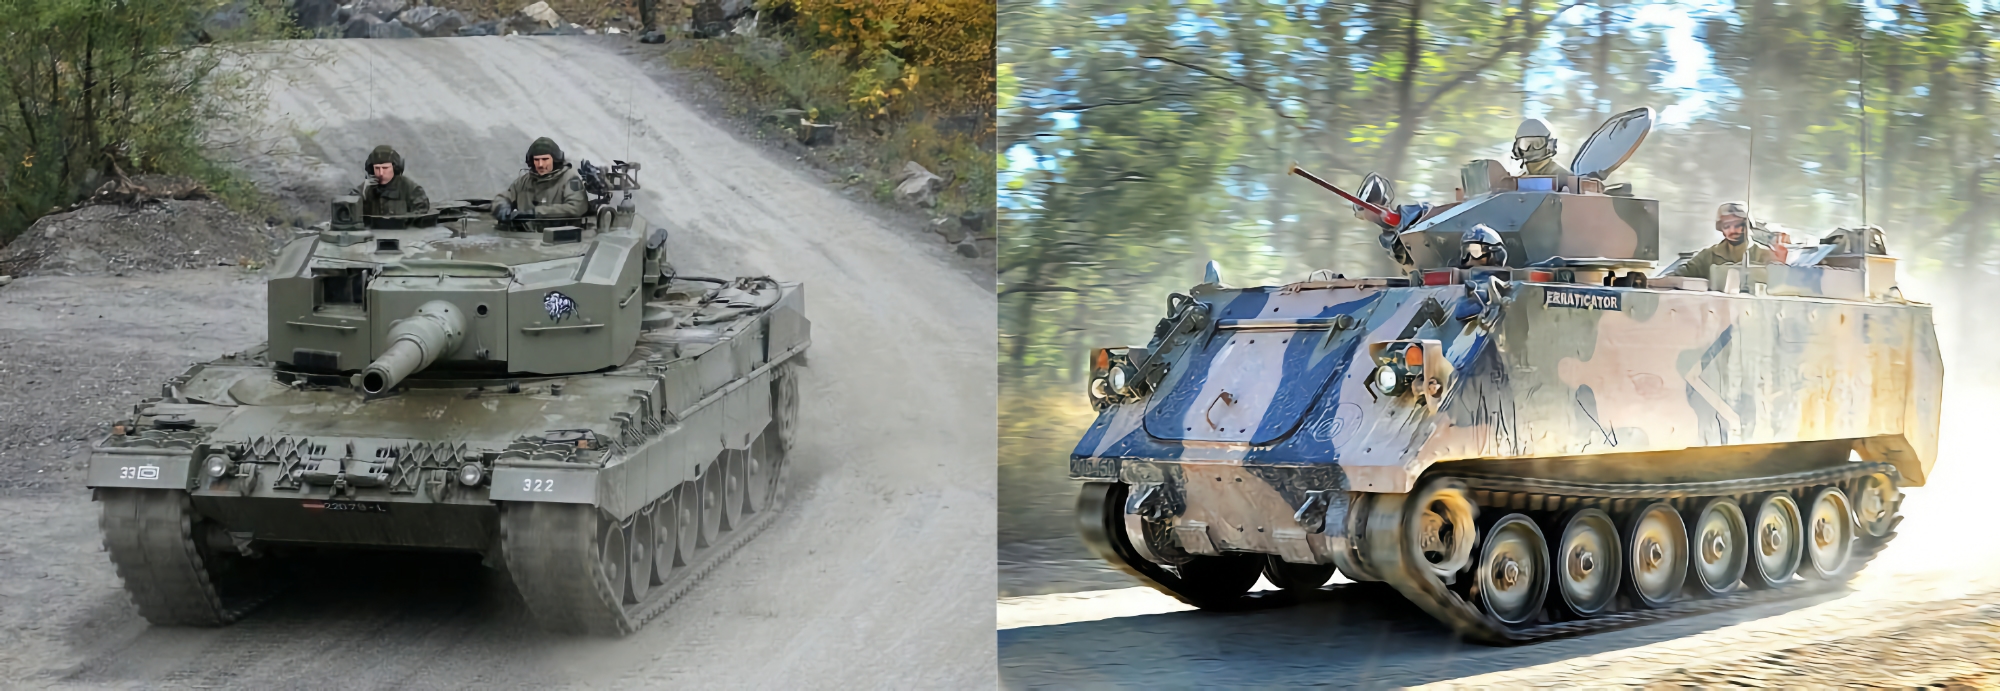 Hiszpania rozpoczyna przekazywanie Ukrainie czołgów Leopard 2A4 i transporterów opancerzonych M113